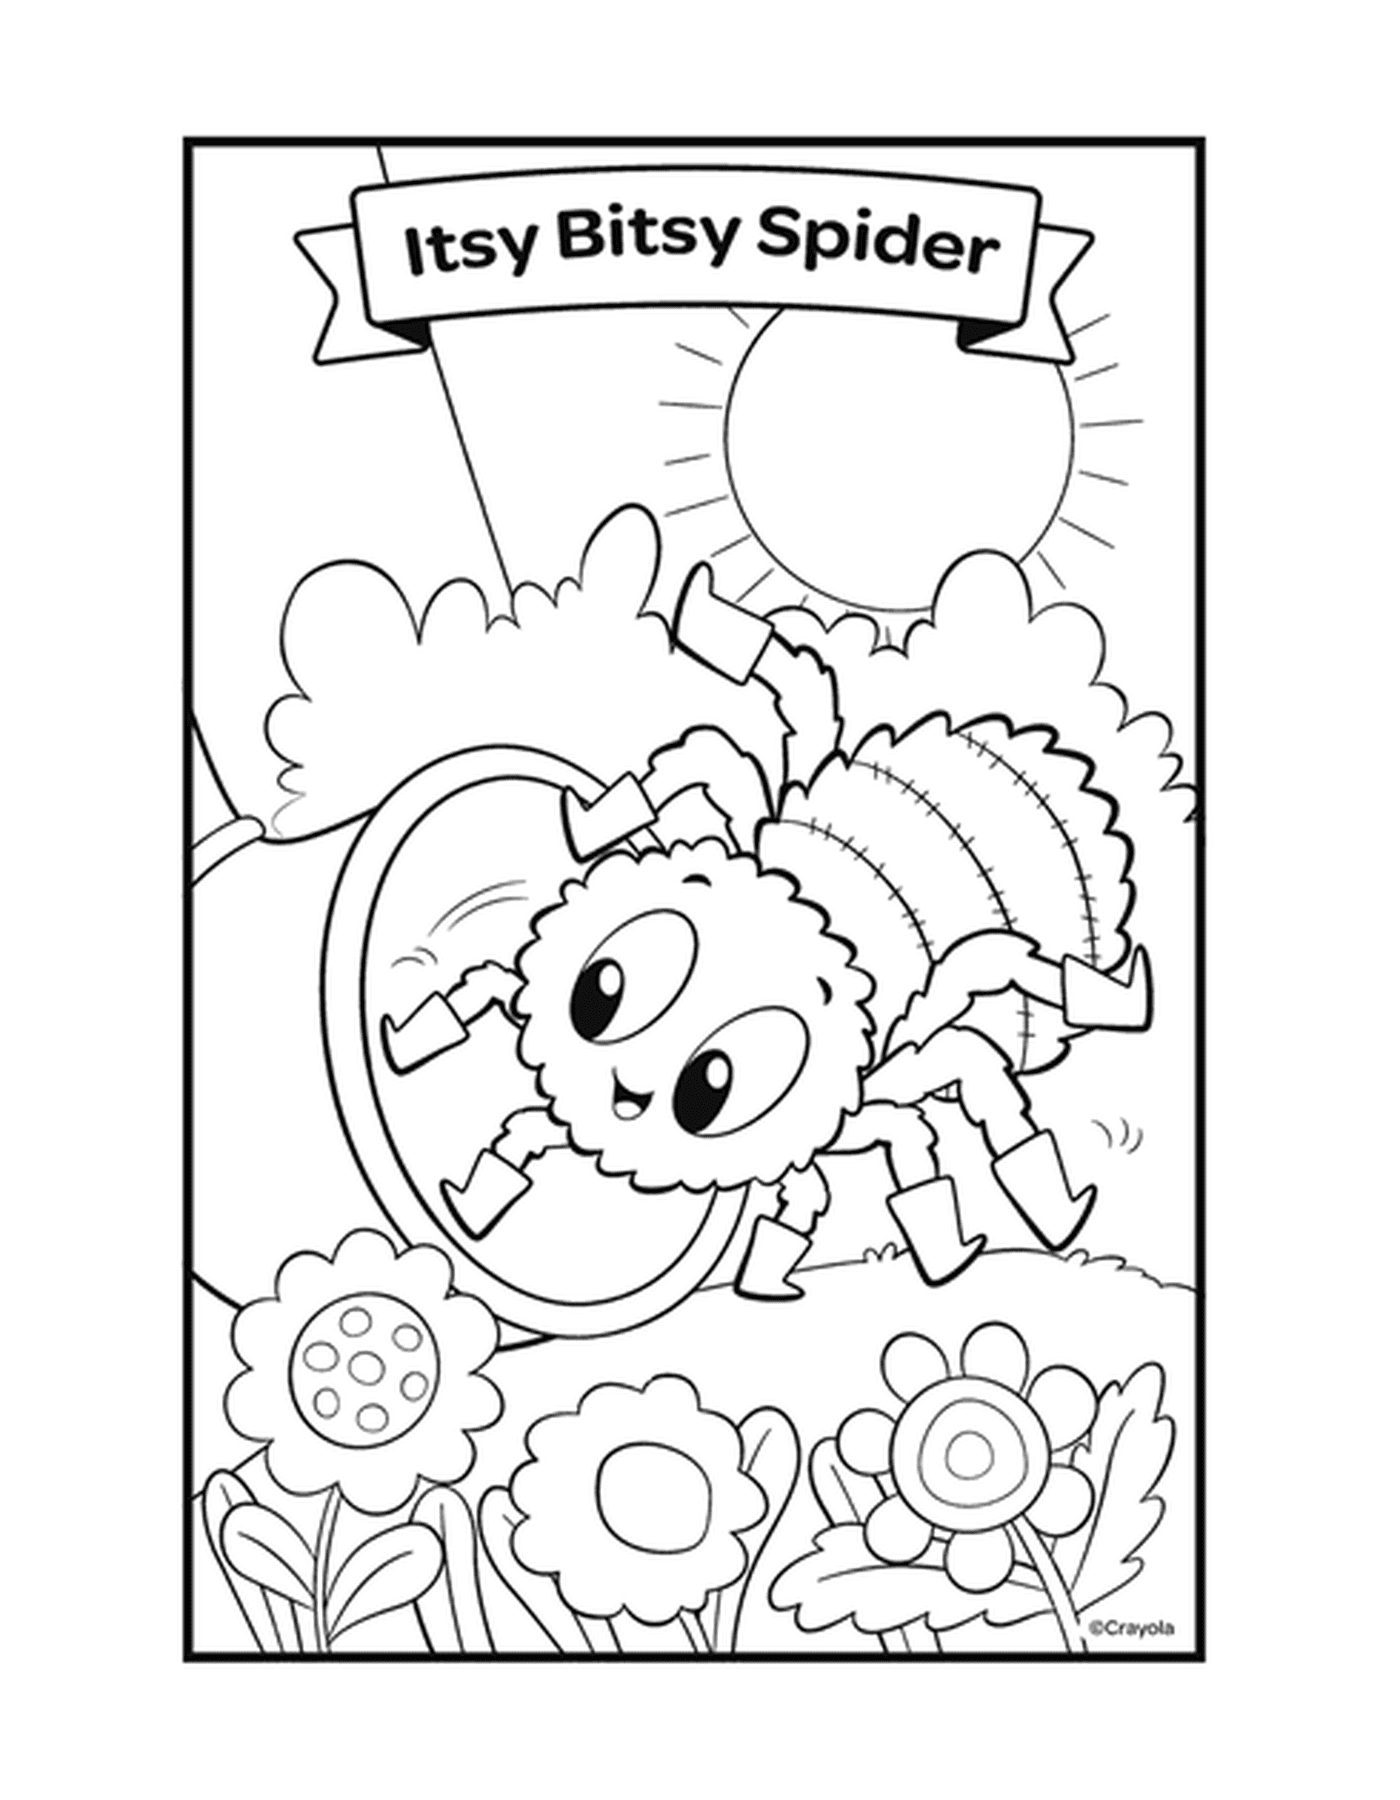  Itsy Bitsy Spider rima com uma aranha em uma teia 